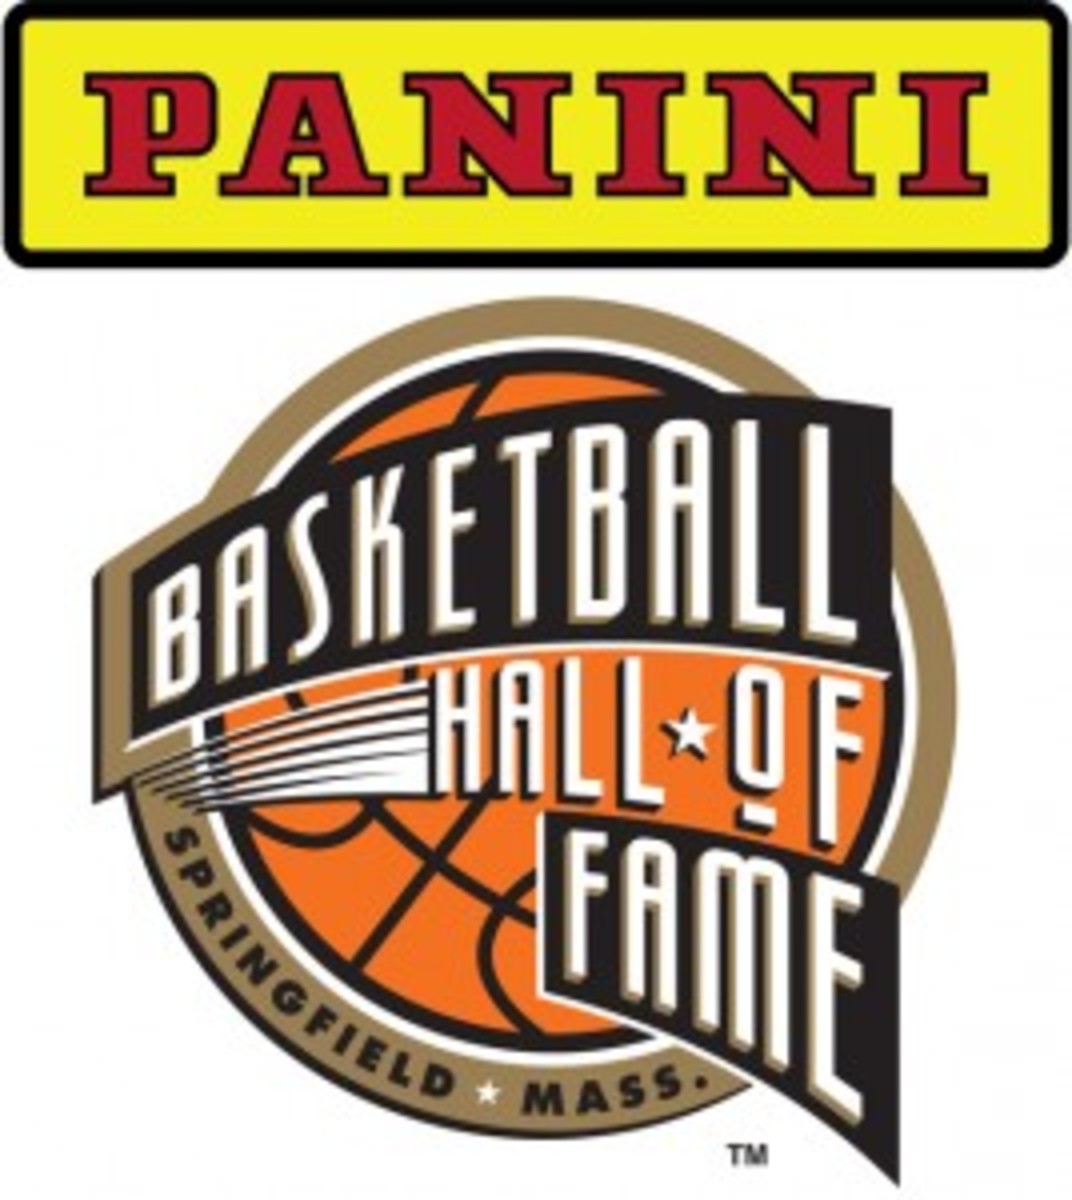 Panini Basketball Hall of Fame logo